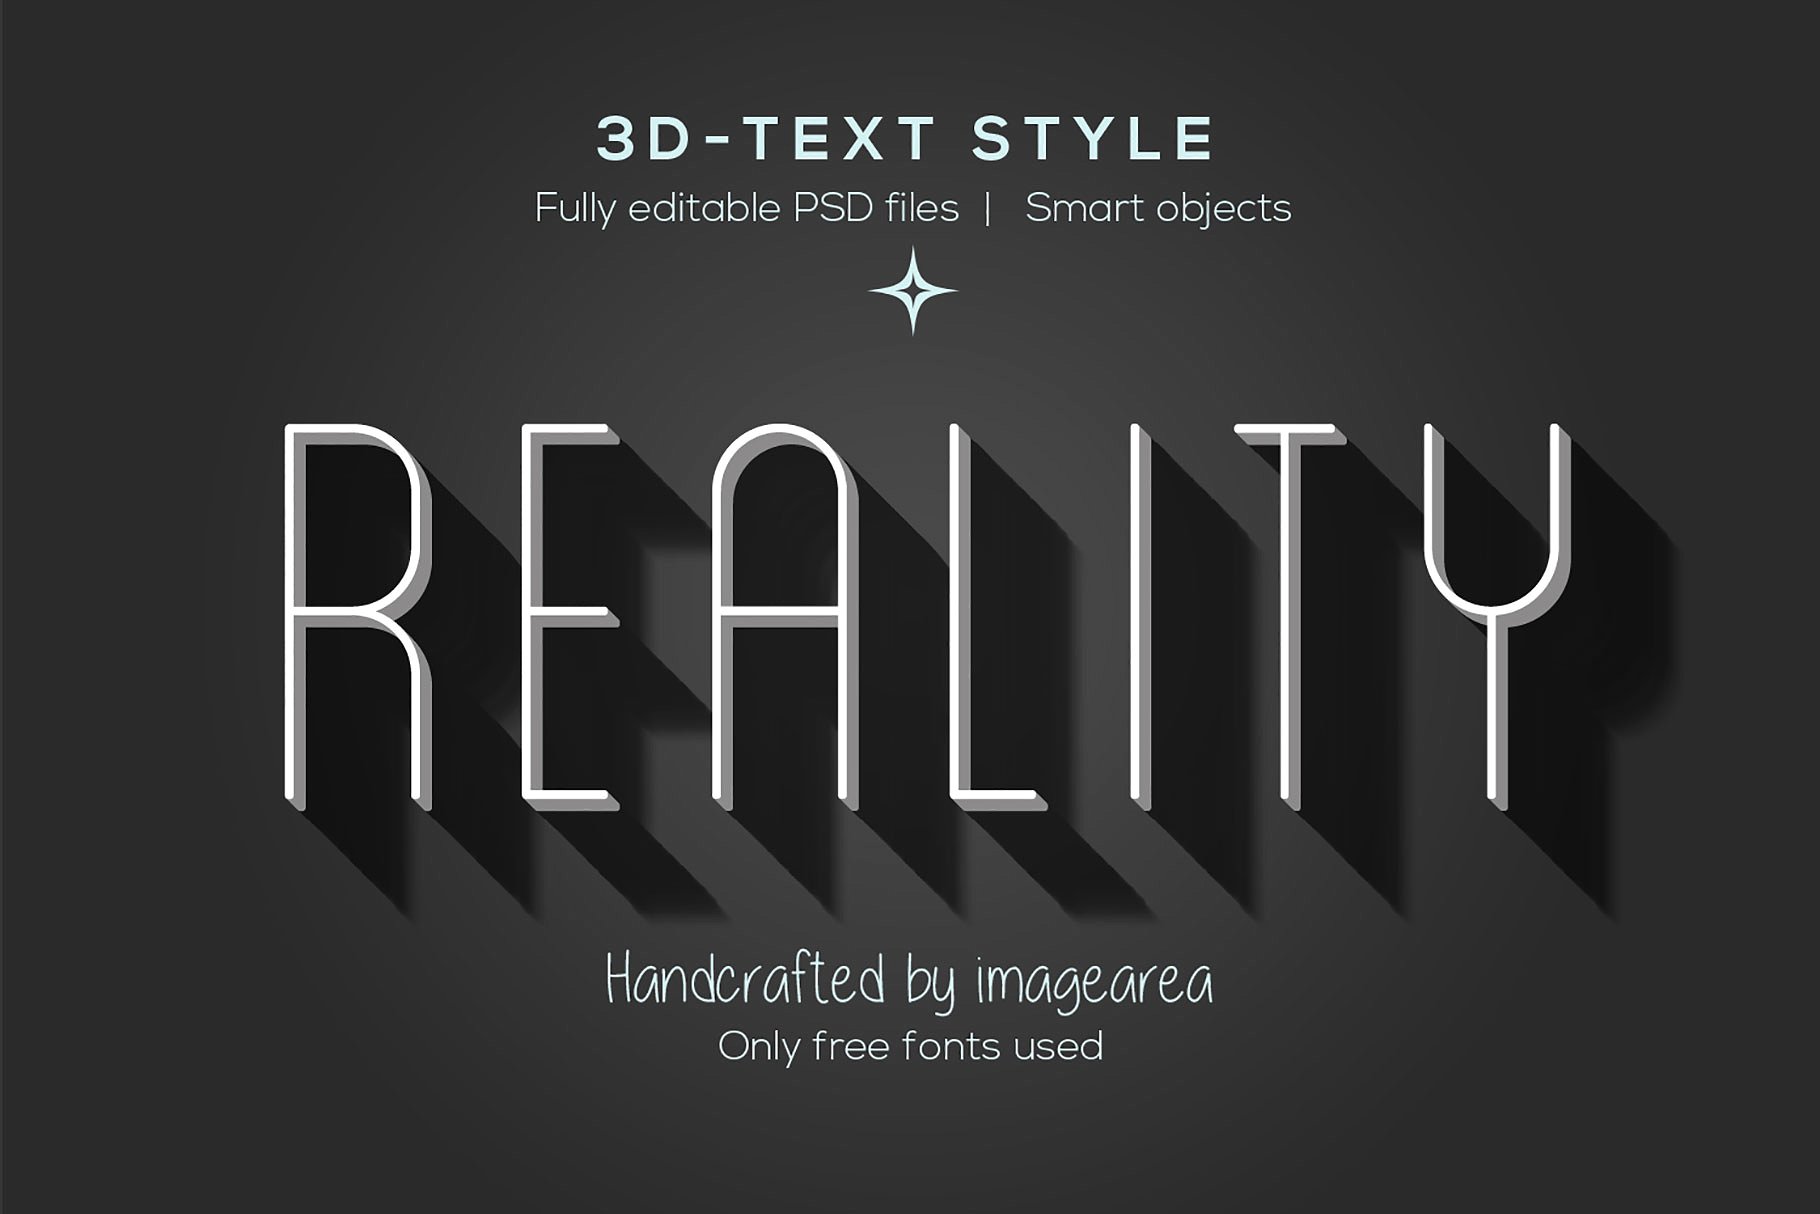 创意3D文本图层样式 Amazing 3D Text Styles插图(9)